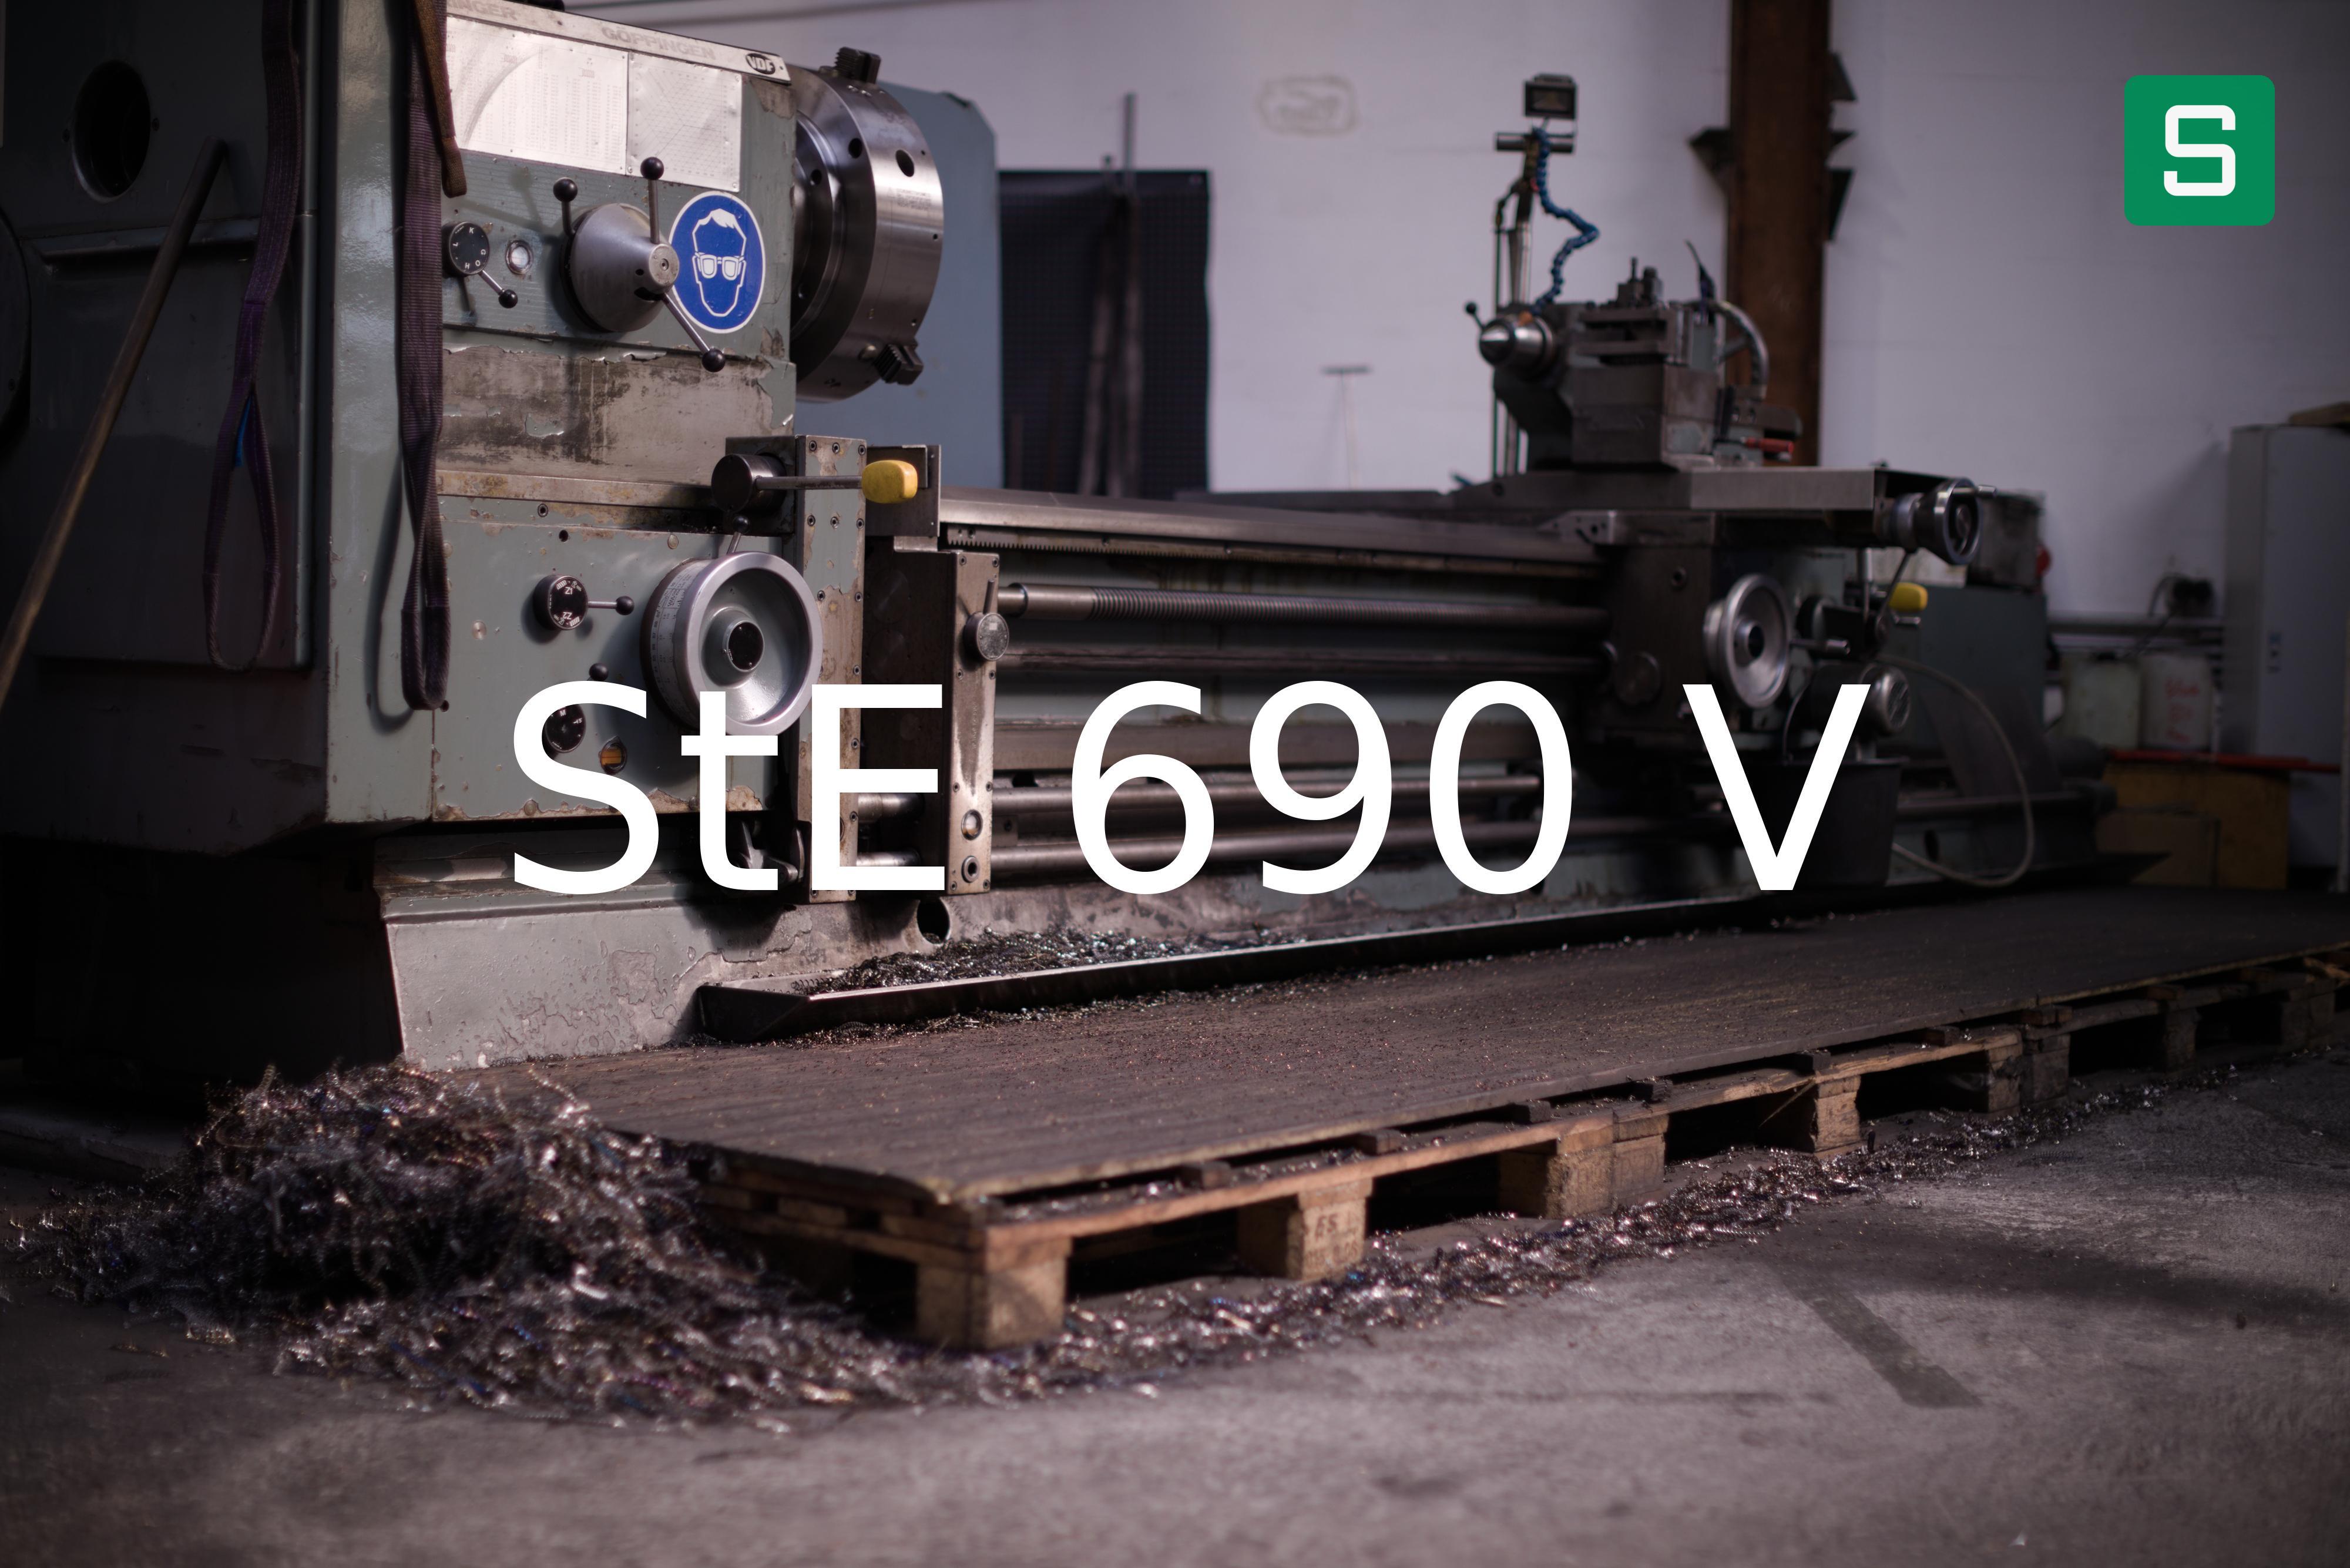 Steel Material: StE 690 V